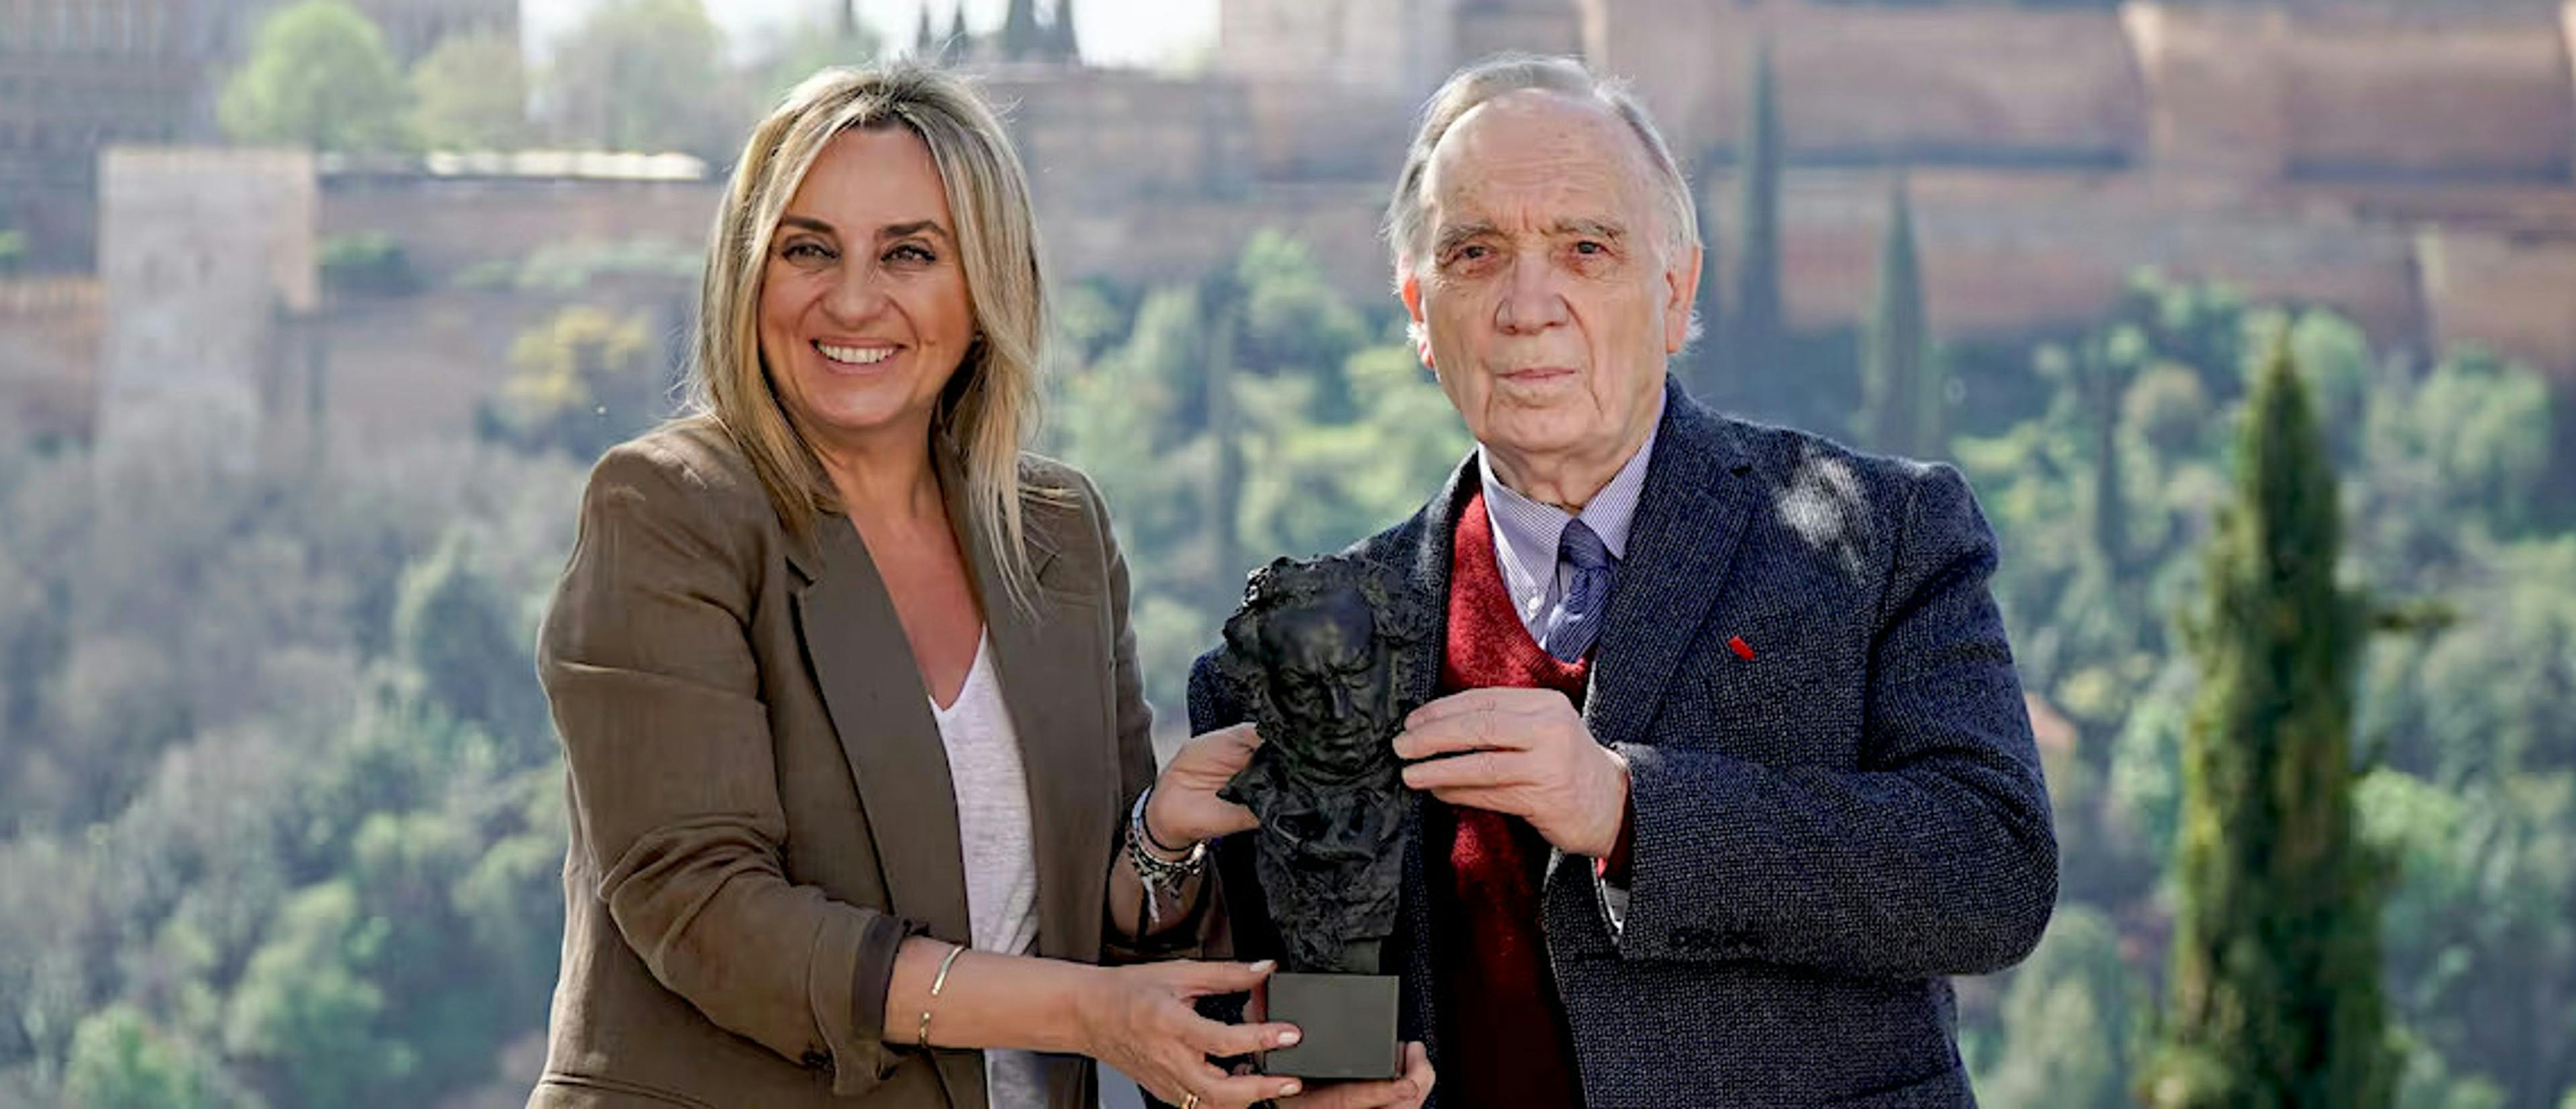 La alcaldesa de Granada, Marifrán Carazo, y el presidente de la Academia de Cine, Fernando Méndez Leite, posan con un Goya ante la Alhambra